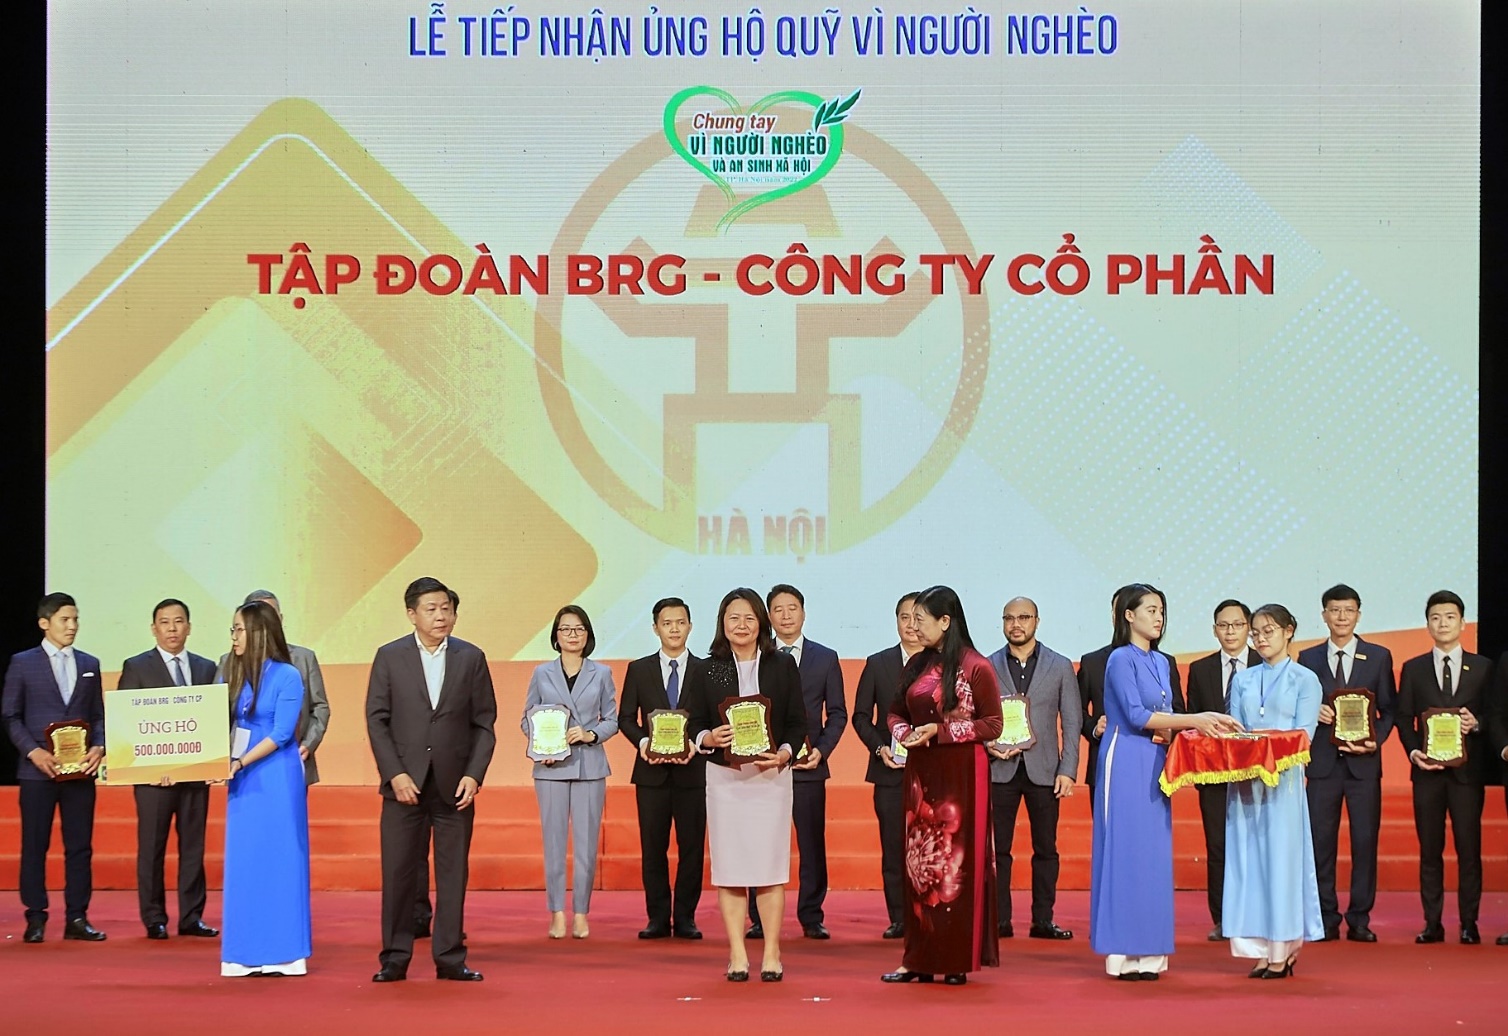 Tập đoàn BRG ủng hộ 500 triệu đồng cho quỹ vì người nghèo Hà Nội năm 2022 - Ảnh 1.